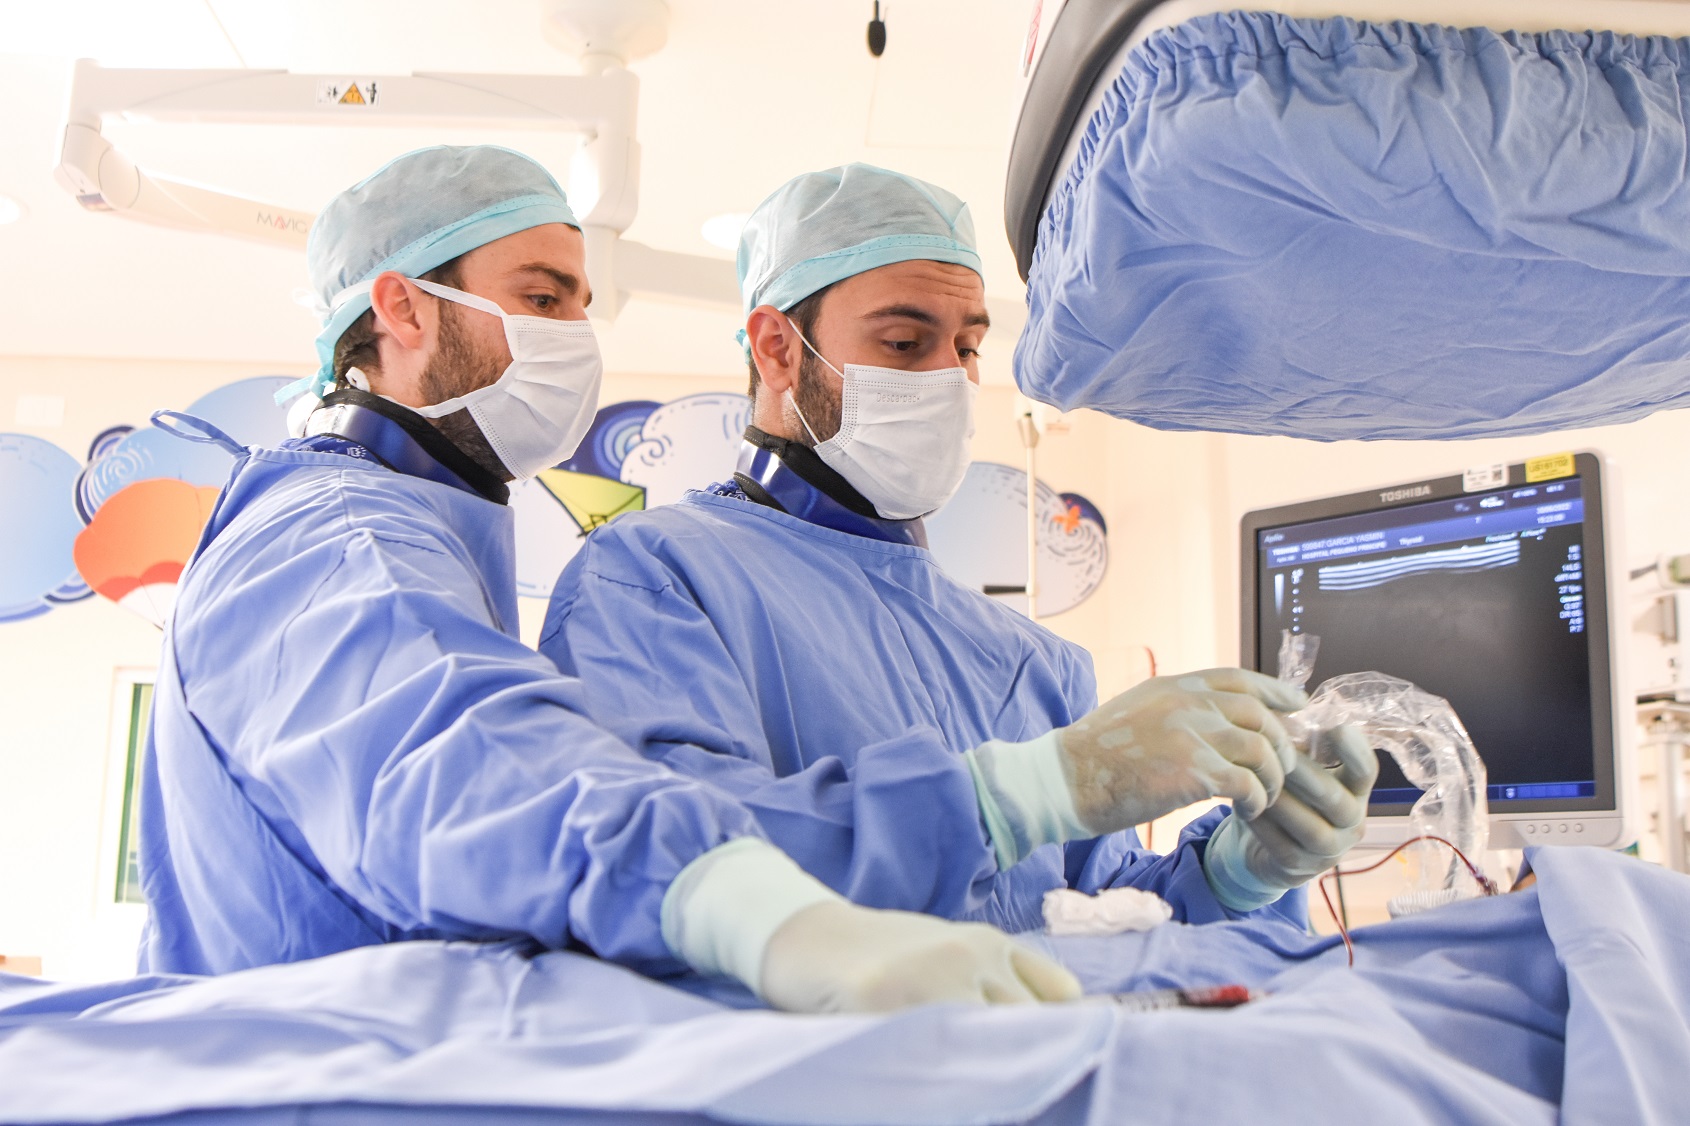 Serviço de Radiologia Intervencionista trata doenças de alta complexidade em procedimentos minimamente invasivos